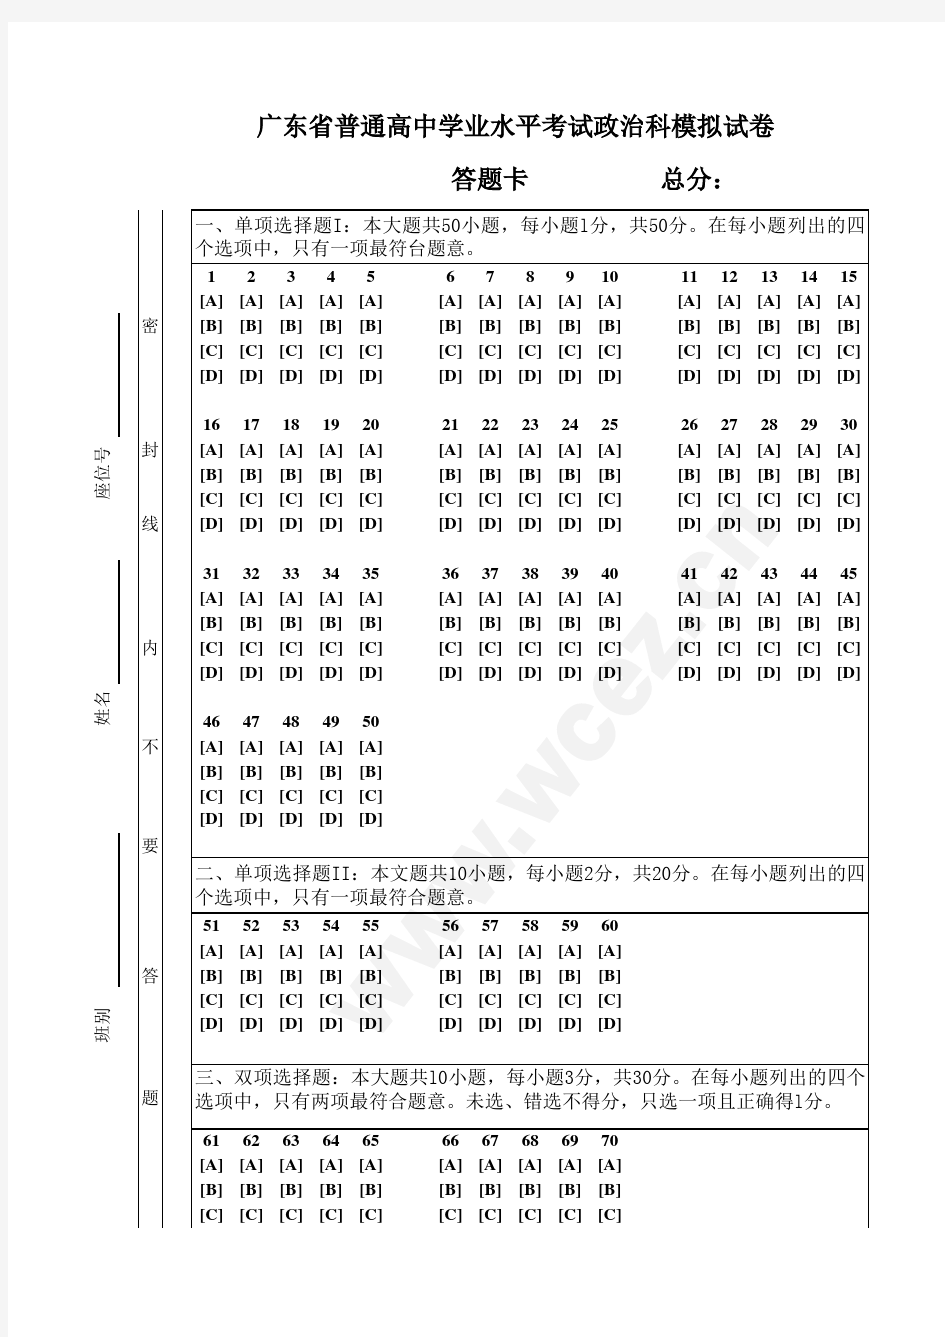 广东省学业水平测试试卷答题卡(全选择题也适用)